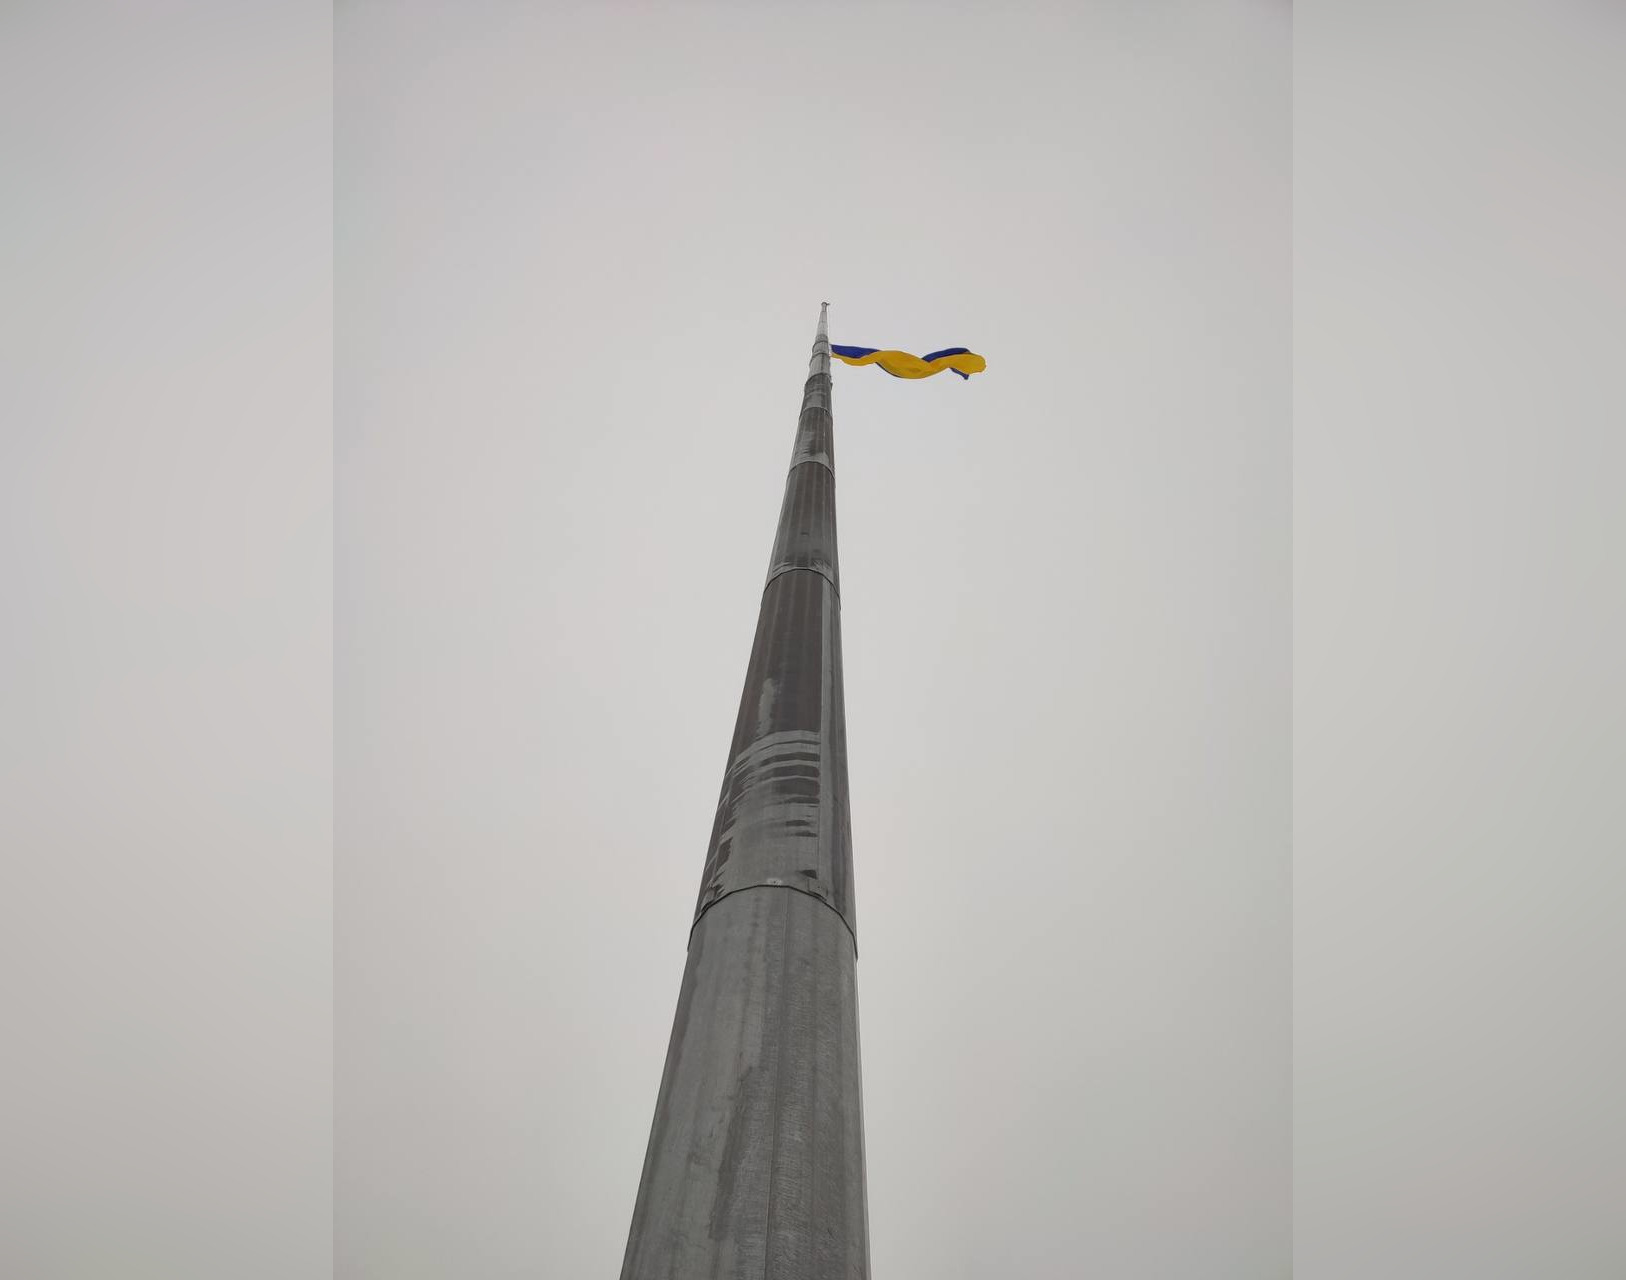 Через погодні умови в Харкові на головному флагштоку міста замінили прапор